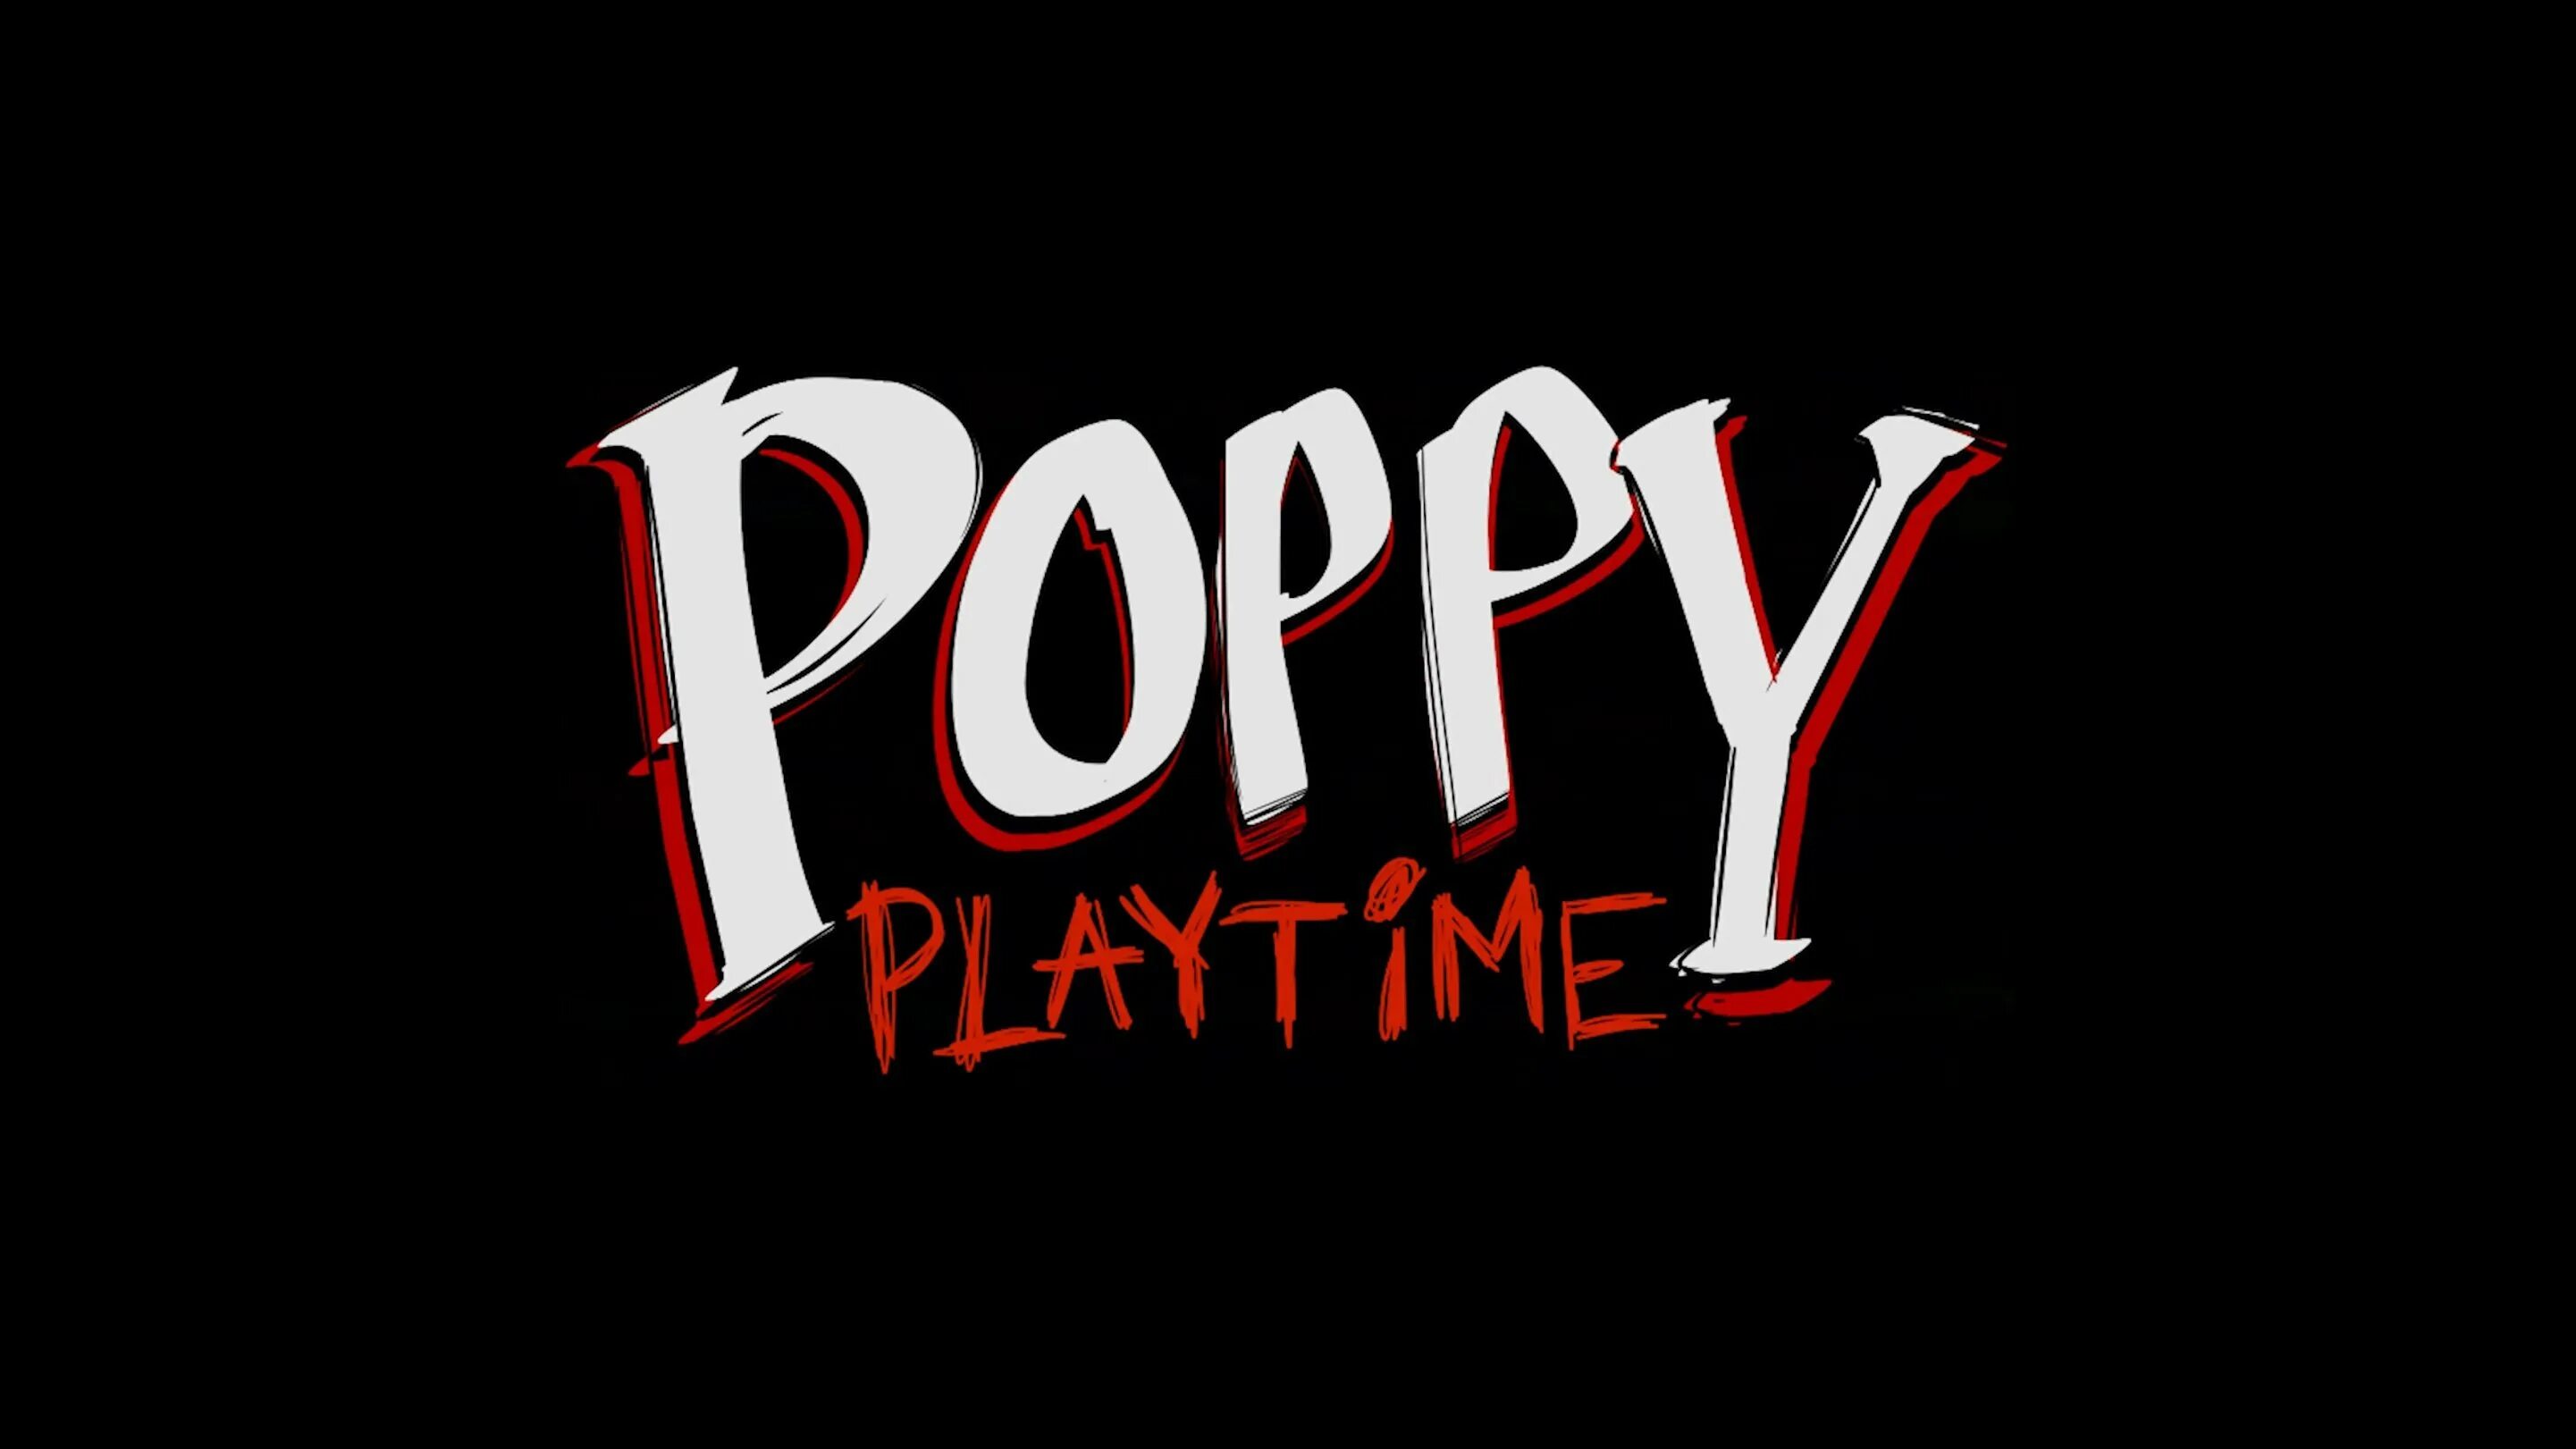 Poppy Playtime. Poppy Playtime надпись. Poppy Playtime 2 надпись. Poppy Playtime 1.